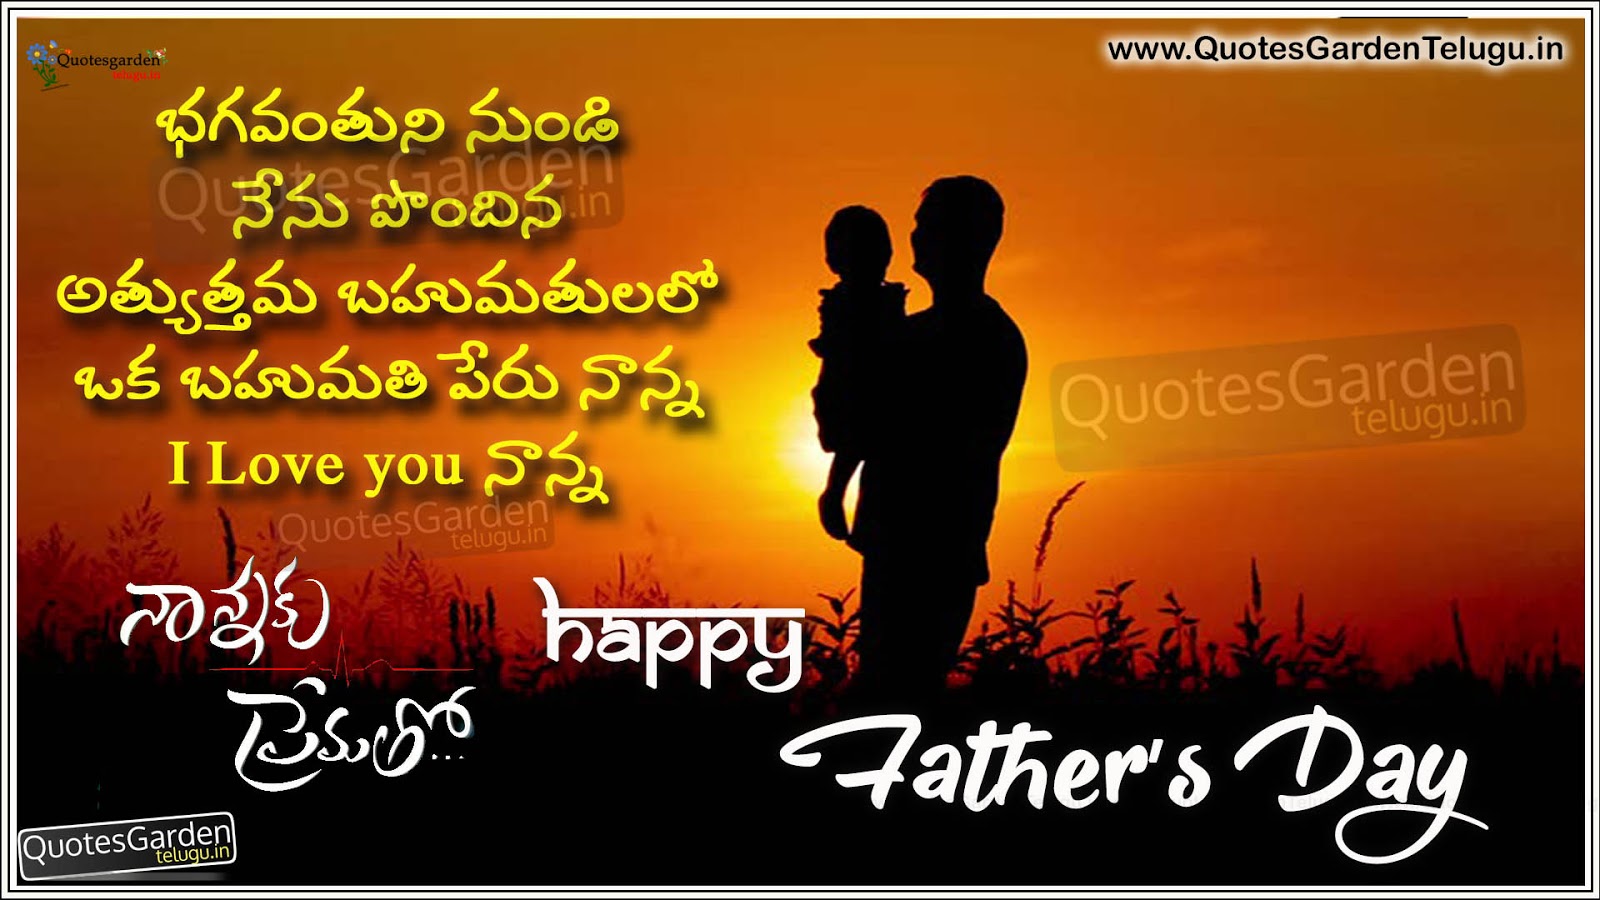 Telugu Fathers Day Quotes | QUOTES GARDEN TELUGU | Telugu Quotes ...